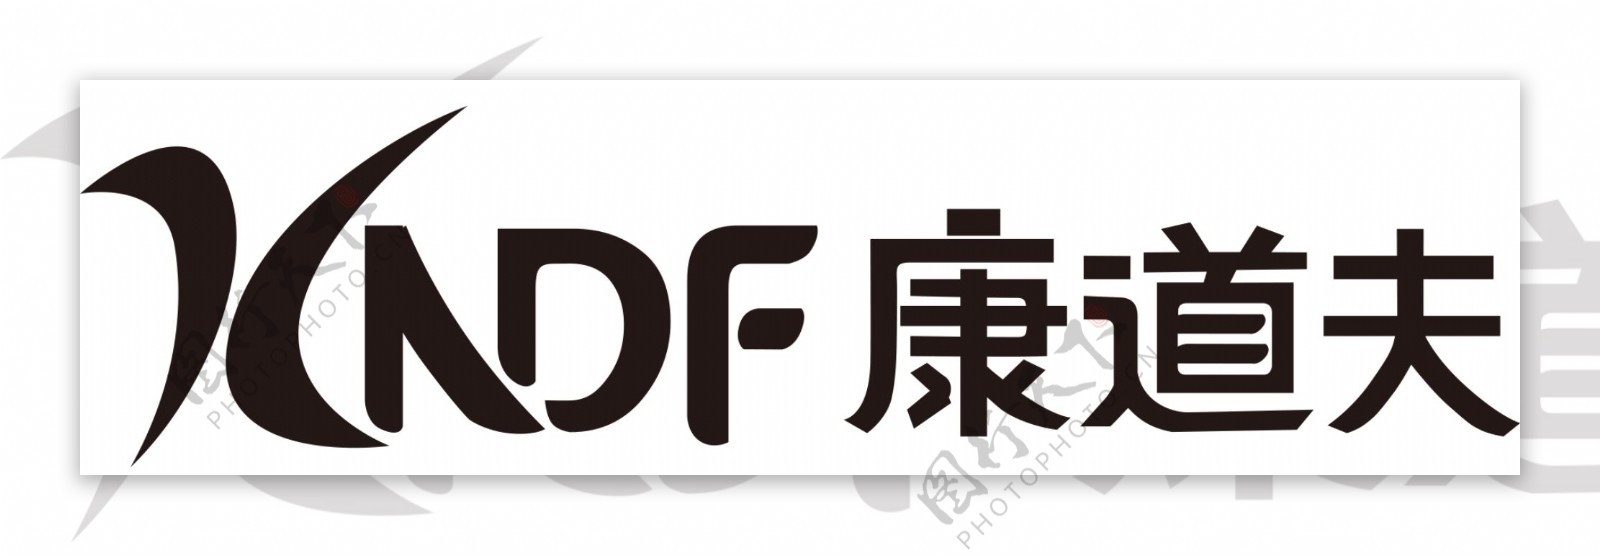 康道夫logo